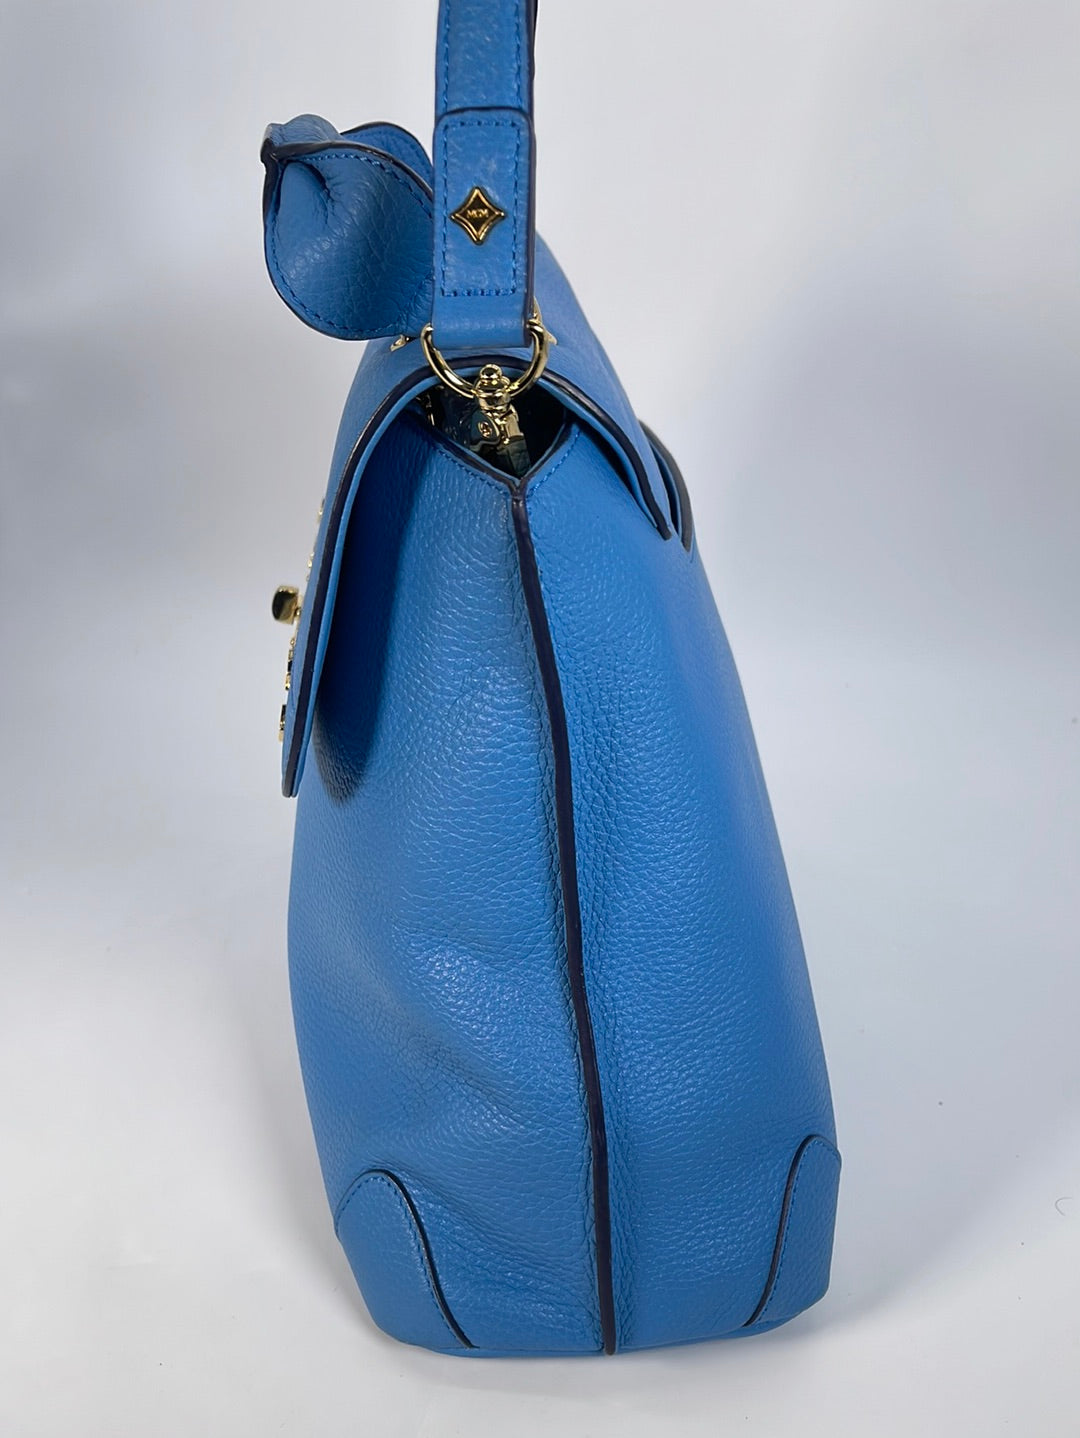 PRELOVED MCM Blue Leather Portuna Tote Shoulder Bag 1024J 021523